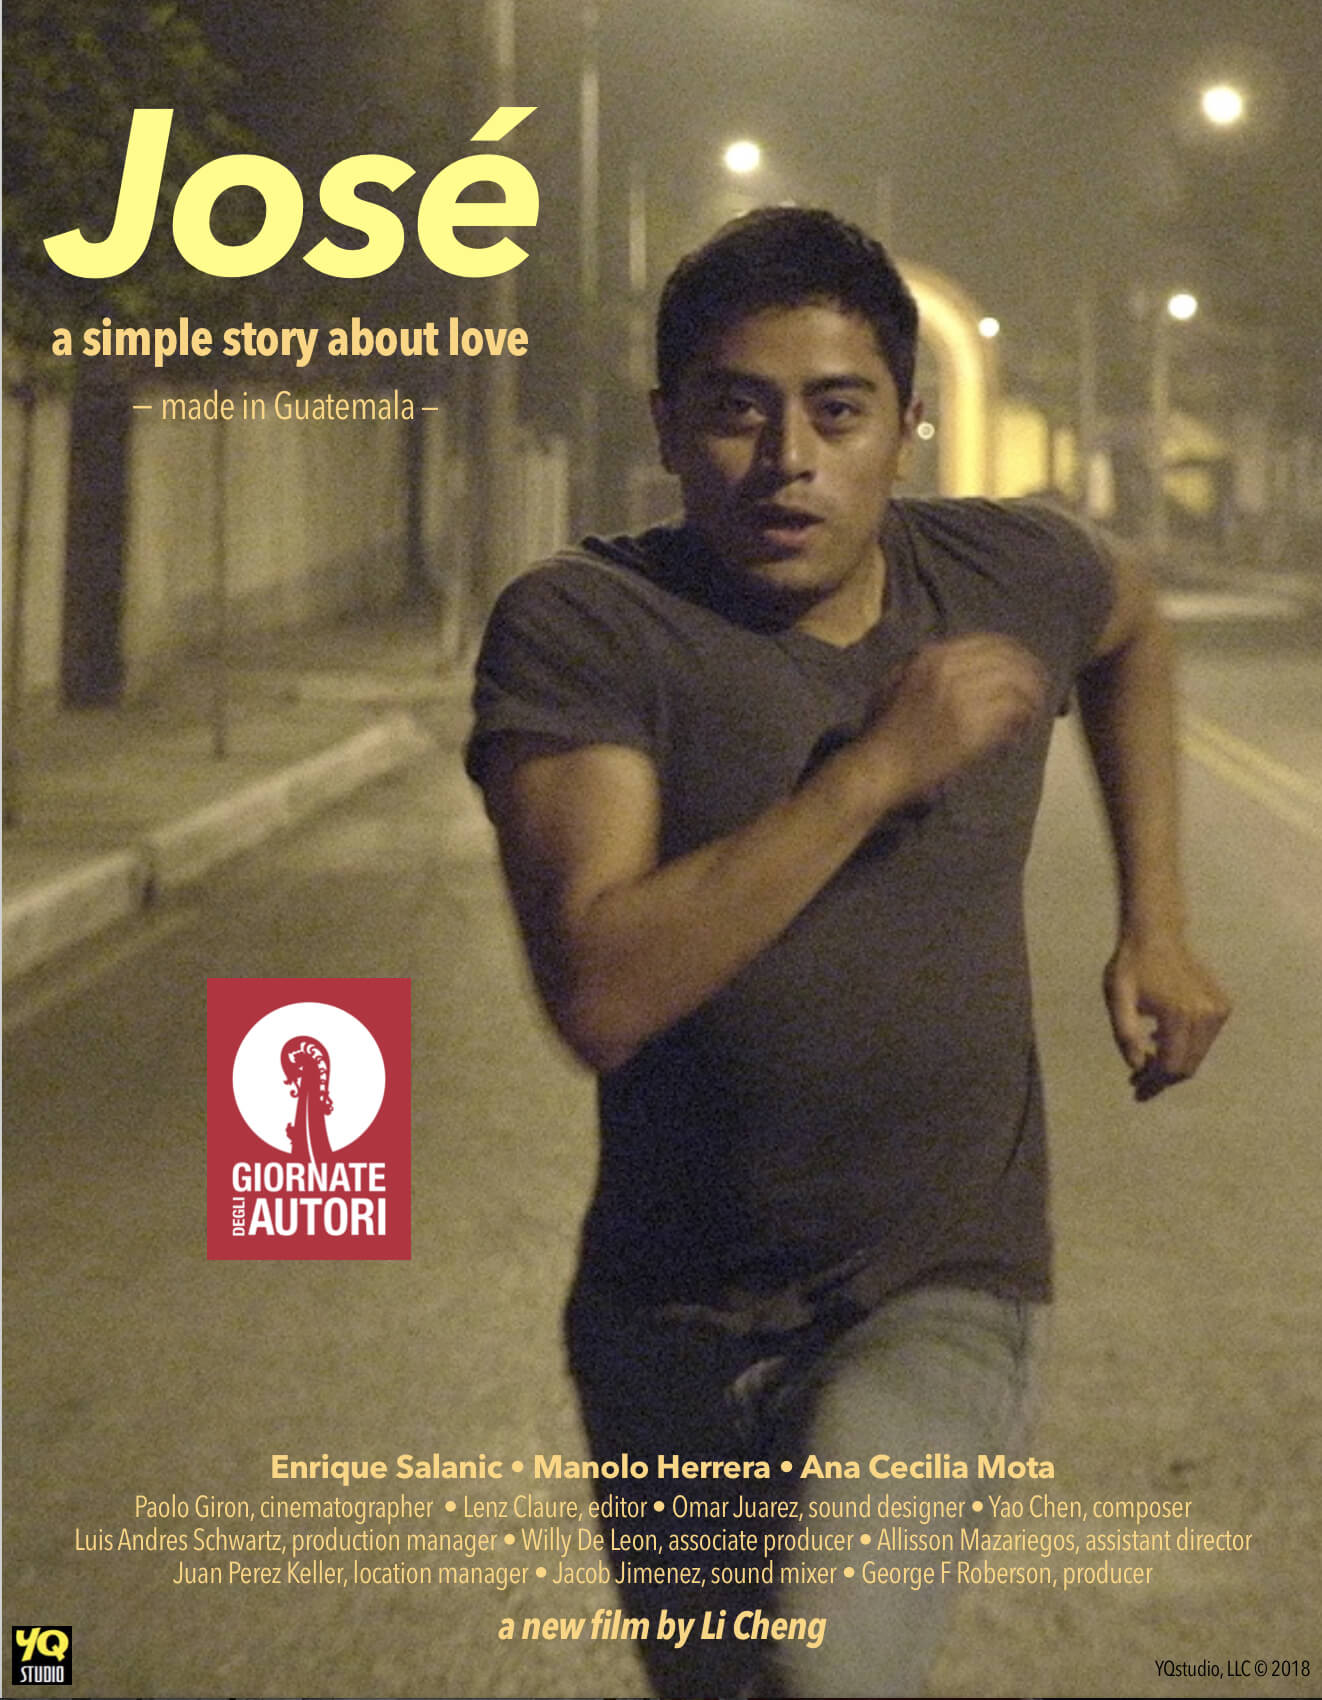 Festival di Venezia: José, dramma romantico gay, vince il Queer Lion. È il primo film dal Guatemala - Jos%C3%A9 poster - Gay.it